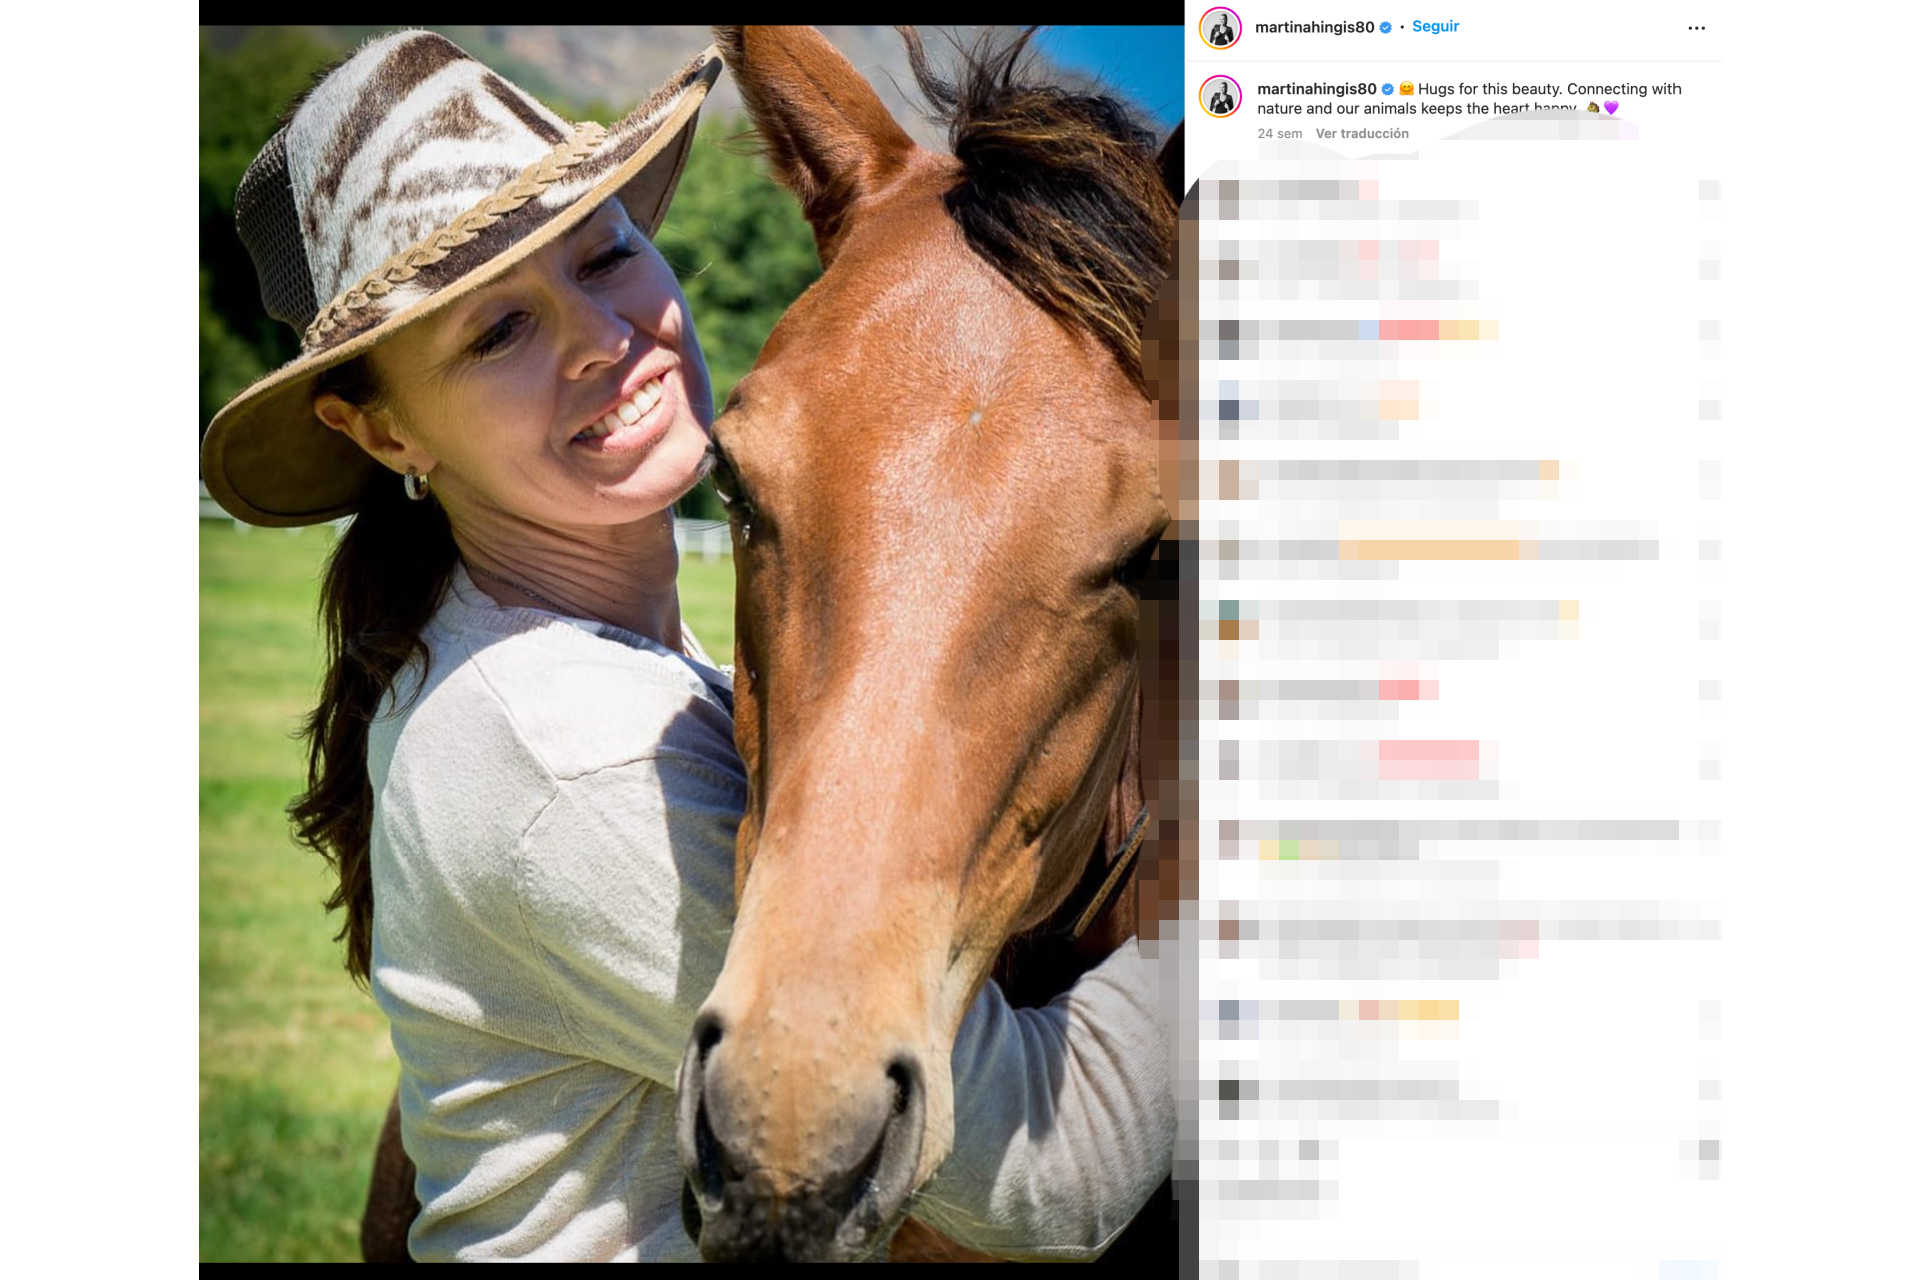 <p>De hecho, a pesar de estar a tan sólo una hora en coche de Zúrich, Martina Hingis tiene fijada su residencia en Bad Ragaz, donde tiene un terreno enorme en plena naturaleza con un establo para sus caballos. Idílico.</p> <p>Foto: Instagram - @martinahingis80</p>